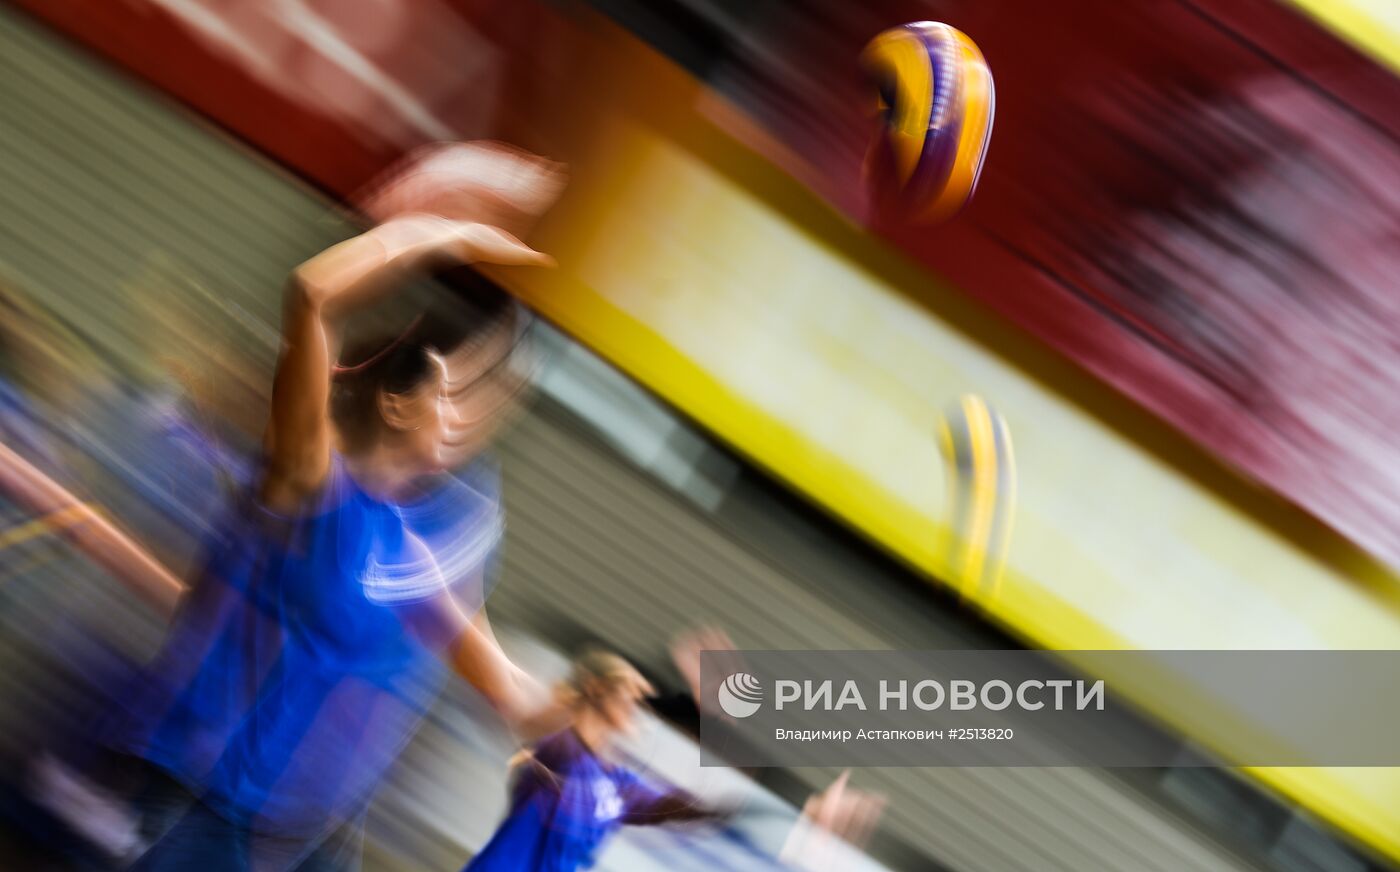 Волейбол. Представление ЖВК "Динамо" (Москва) сезона 2014/2015